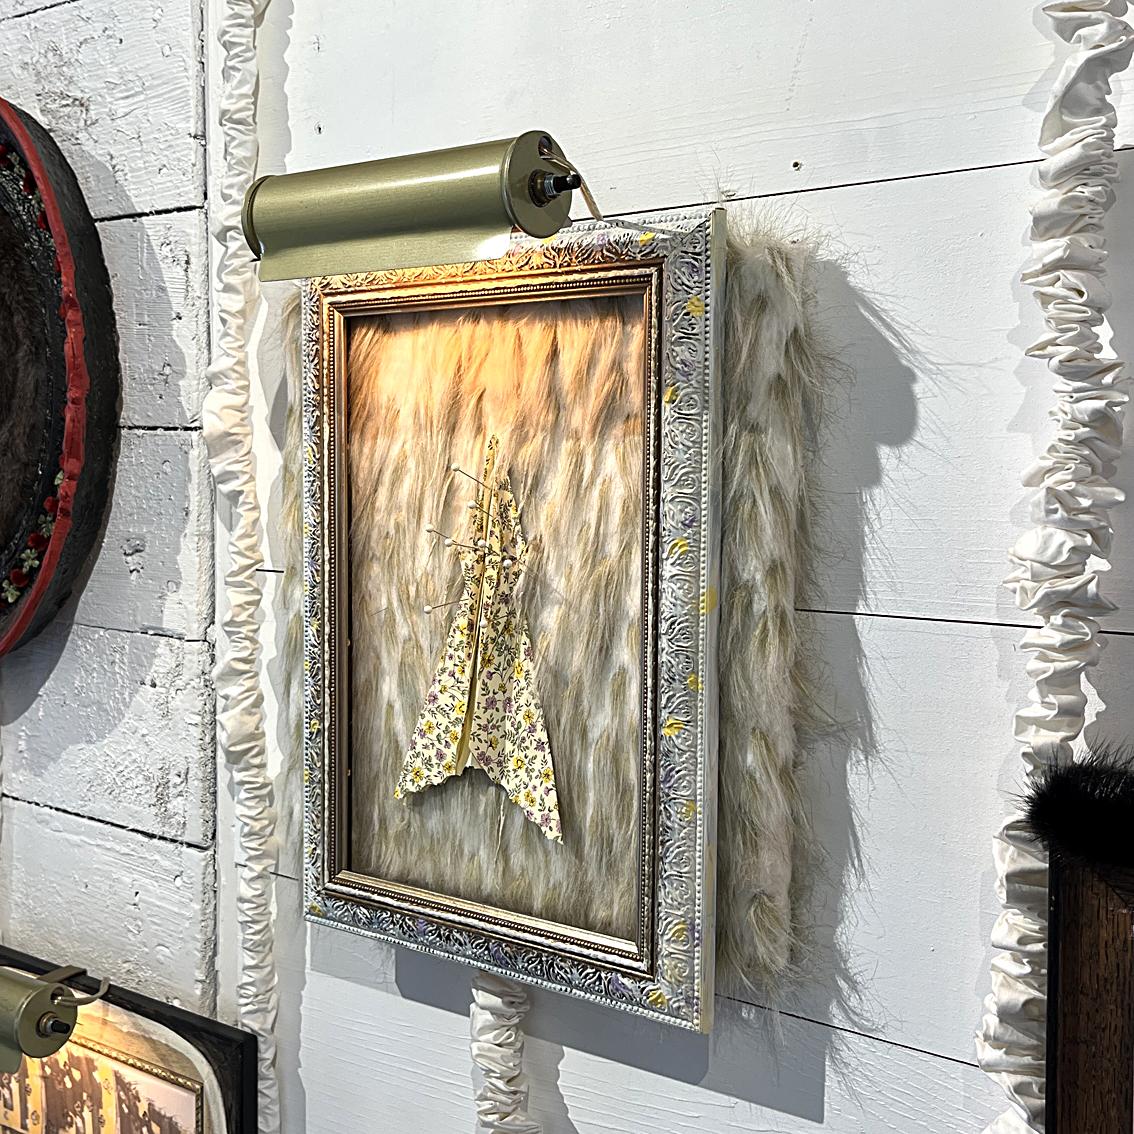 « Specimen », cadre avec lampe électrique, fausse fourrure, papier, épingles, sur carton - Sculpture de Heather Nicol